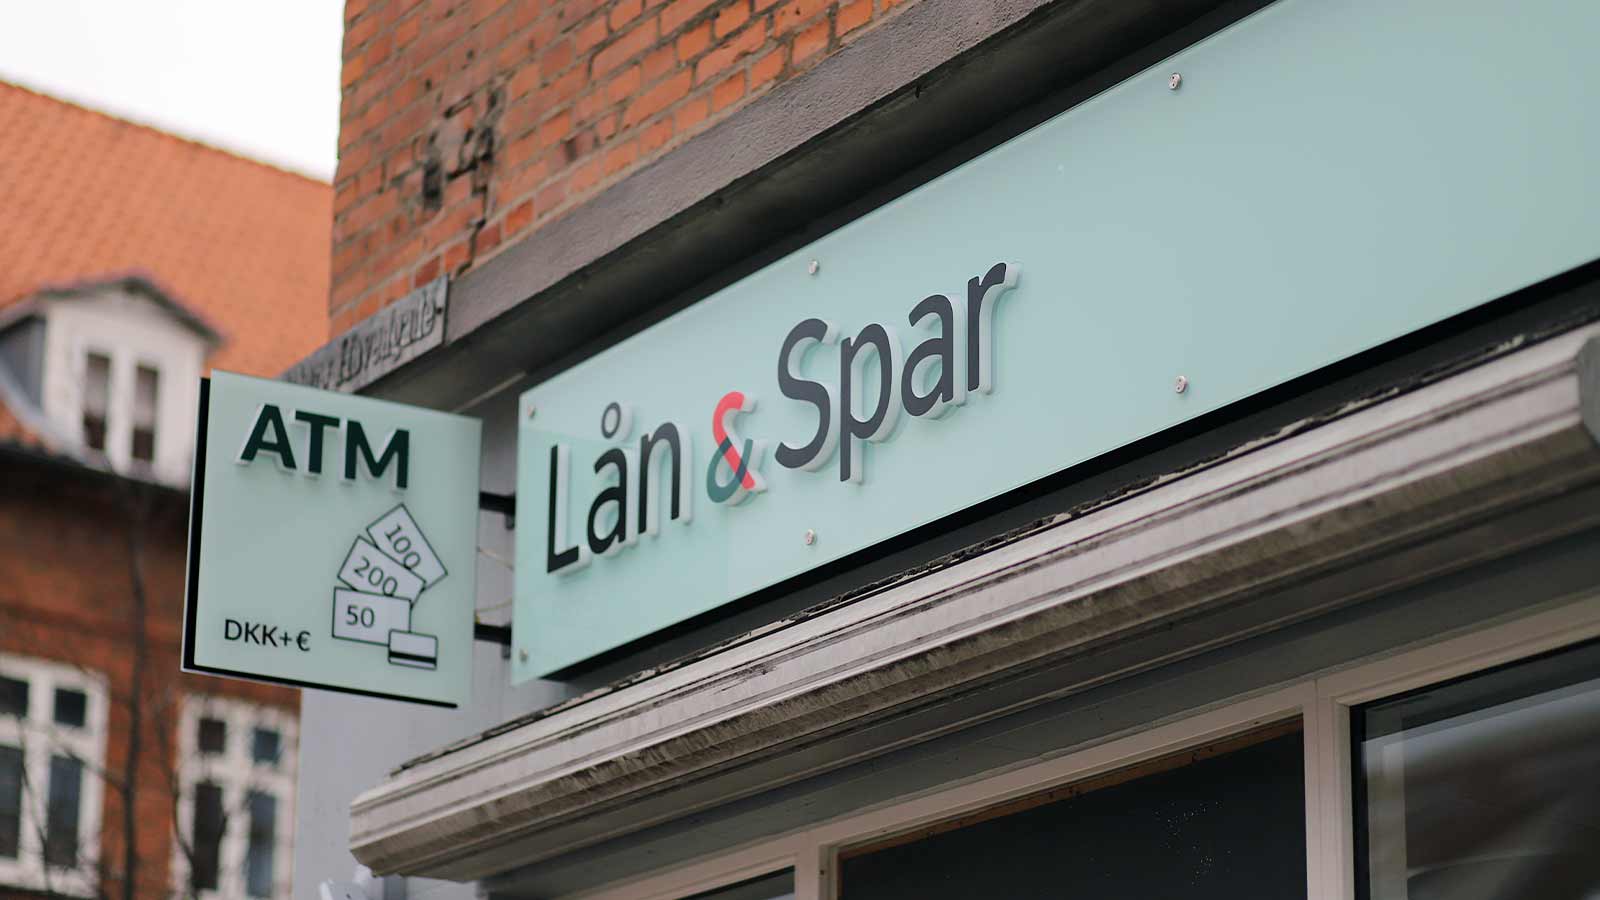 Lån & Spar ATM